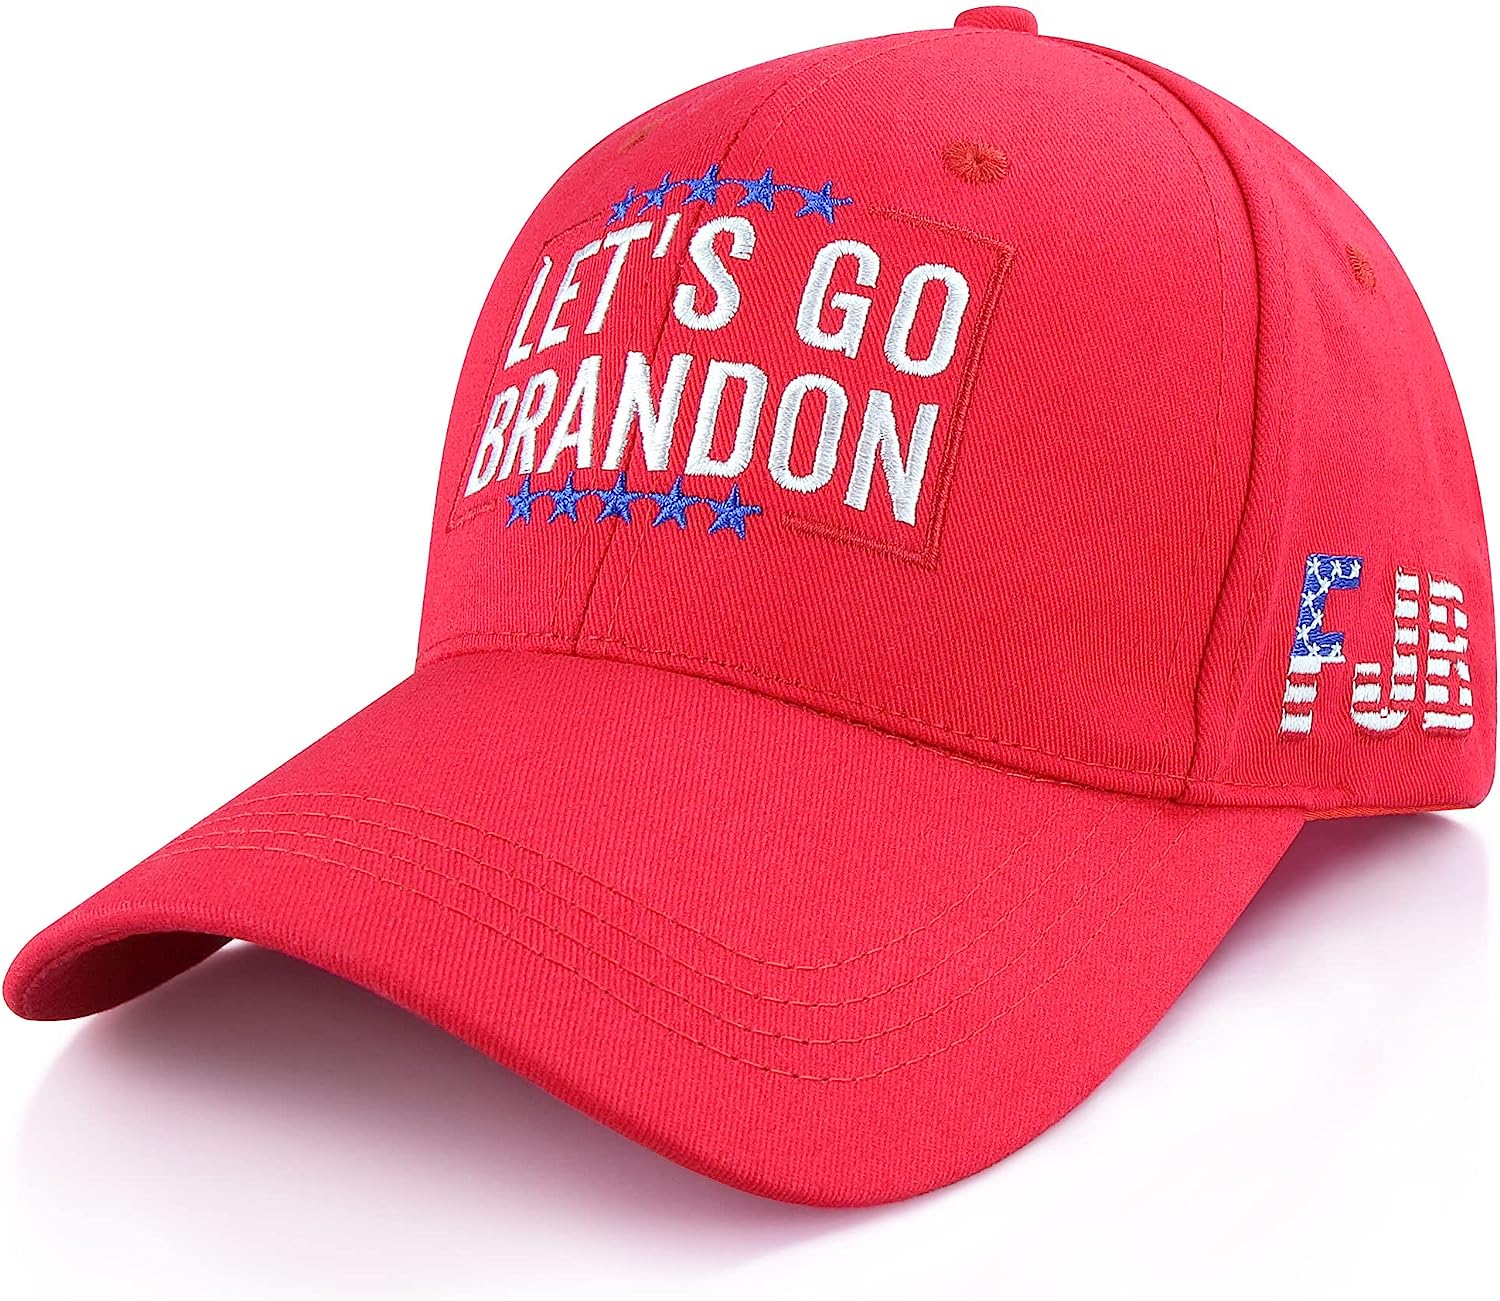 Let's Go Brandon Hat FJB